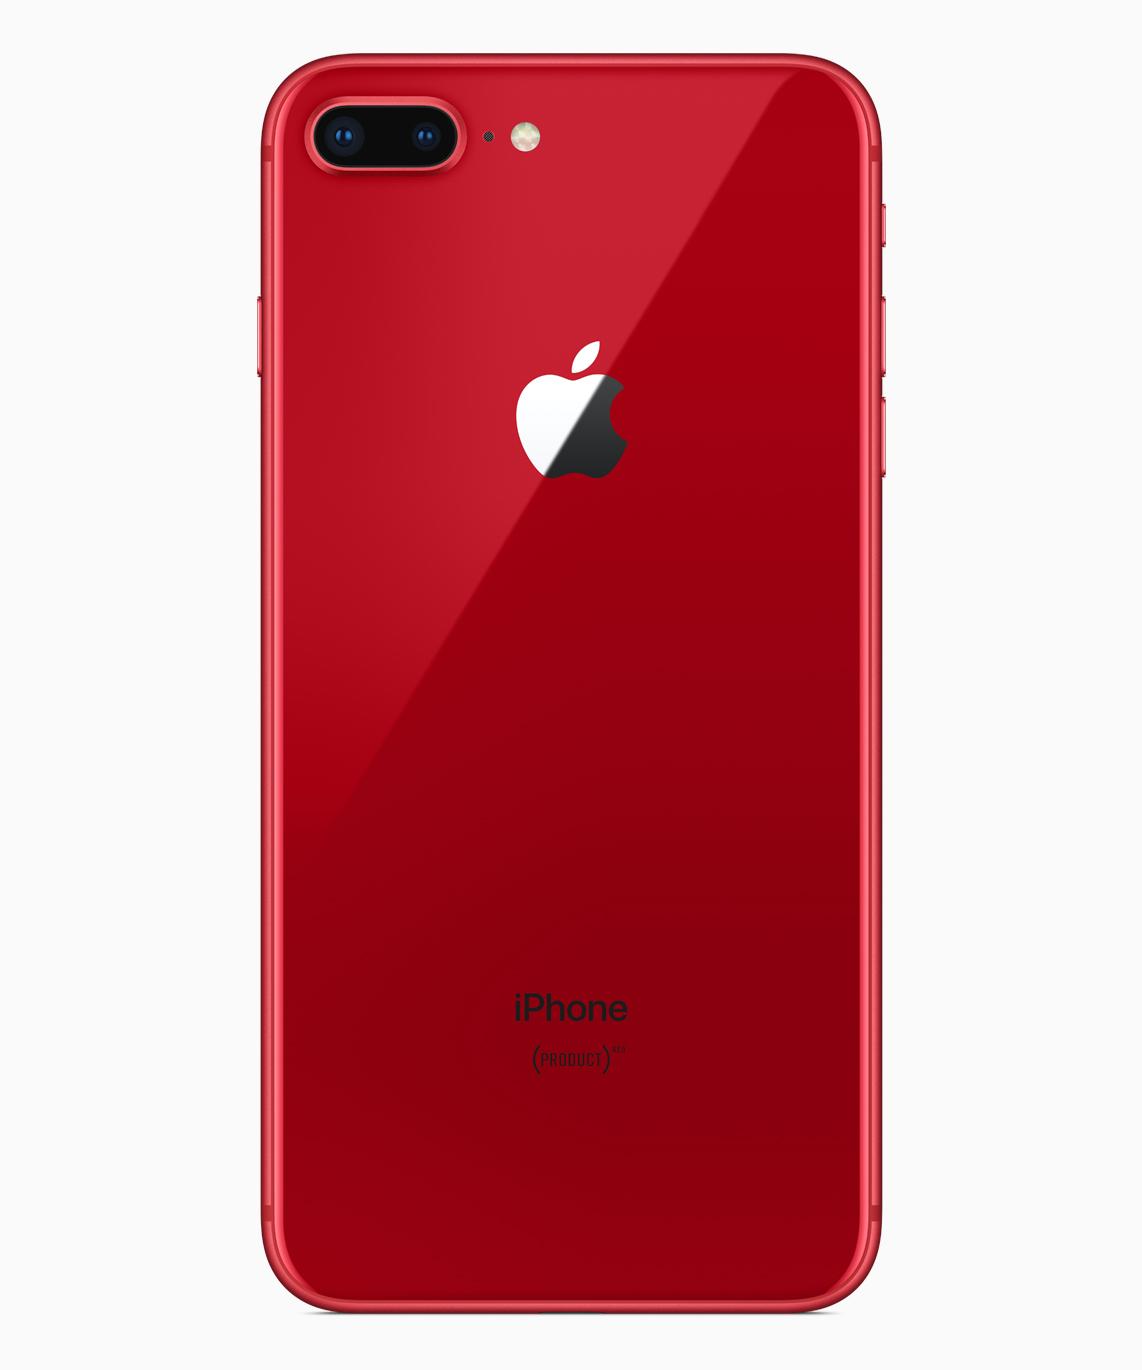 アップル・iPhone 8 Plus PRODUCT RED 本体-